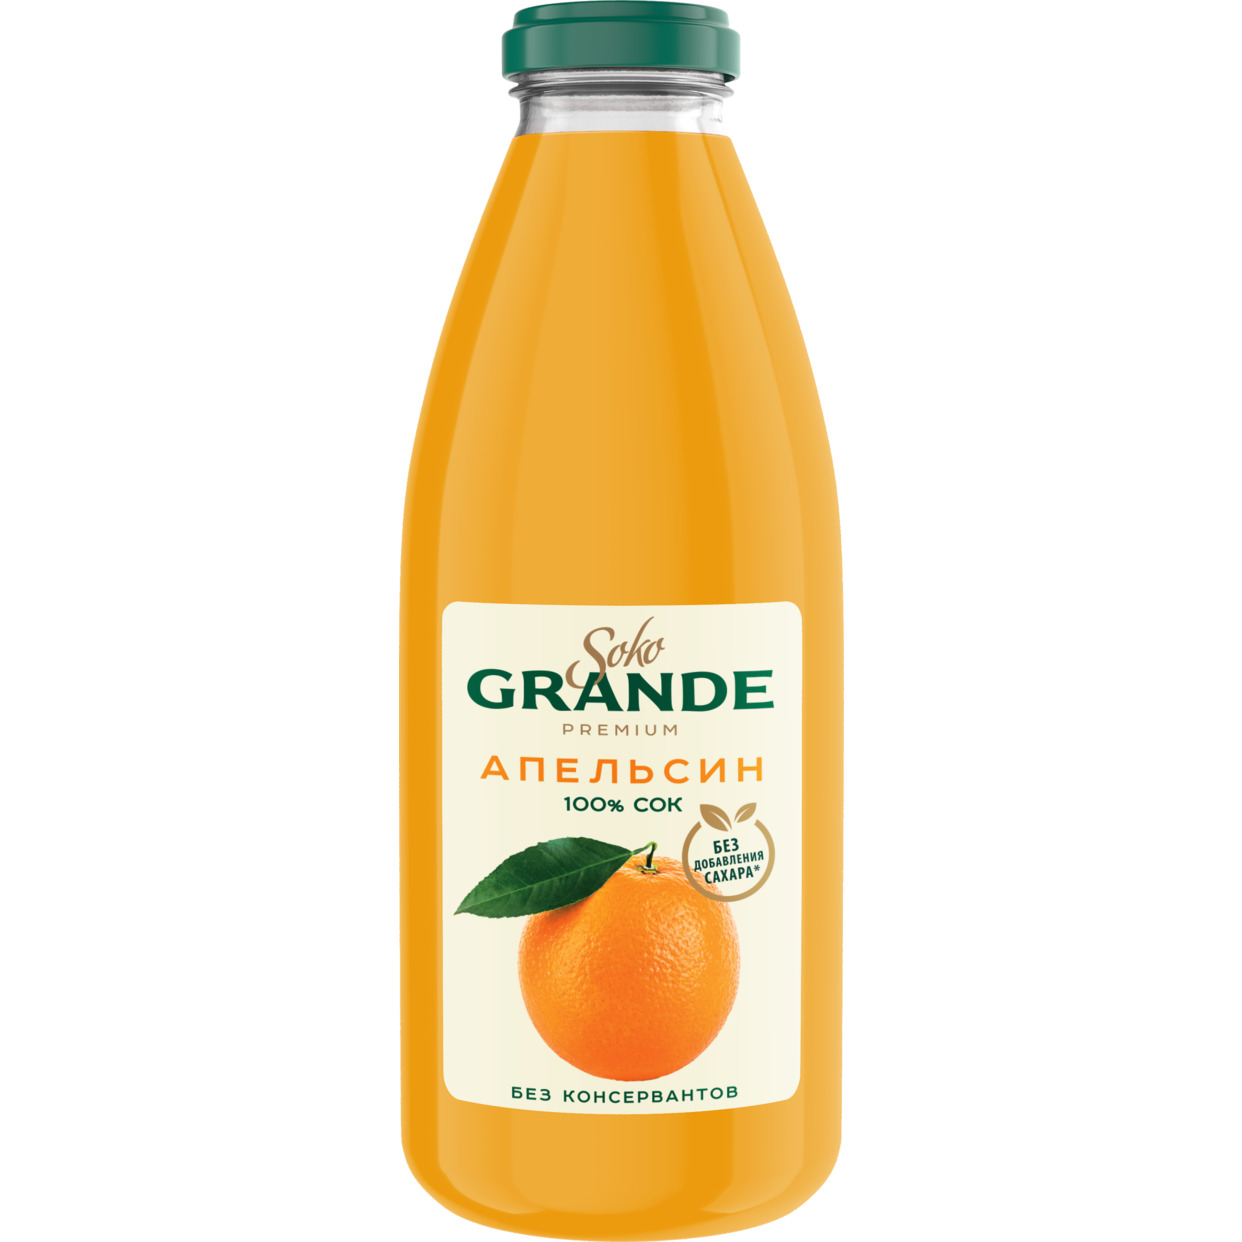 Сок апельсиновый восстановленный с мякотью для детского питания с 3-х лет пастеризованный 0,75л по акции в Пятерочке